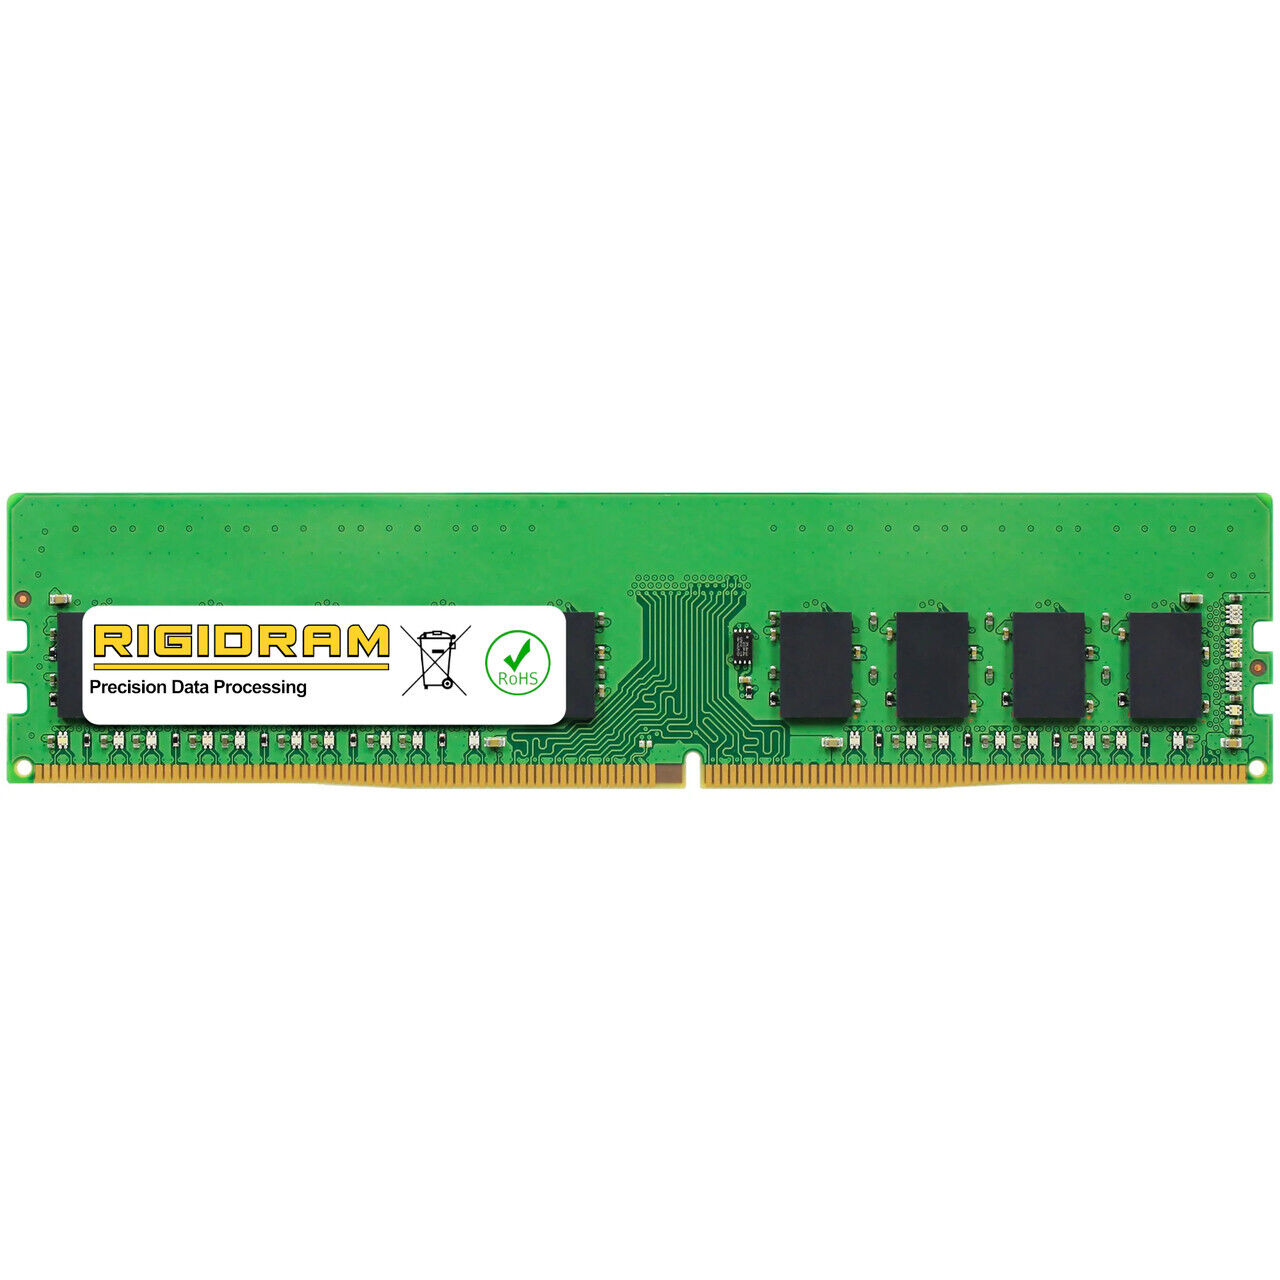 16GB R16GDR4ECP0-UD-2666 DDR4-2666MHz RigidRAM UDIMM ECC Memory for Qnap